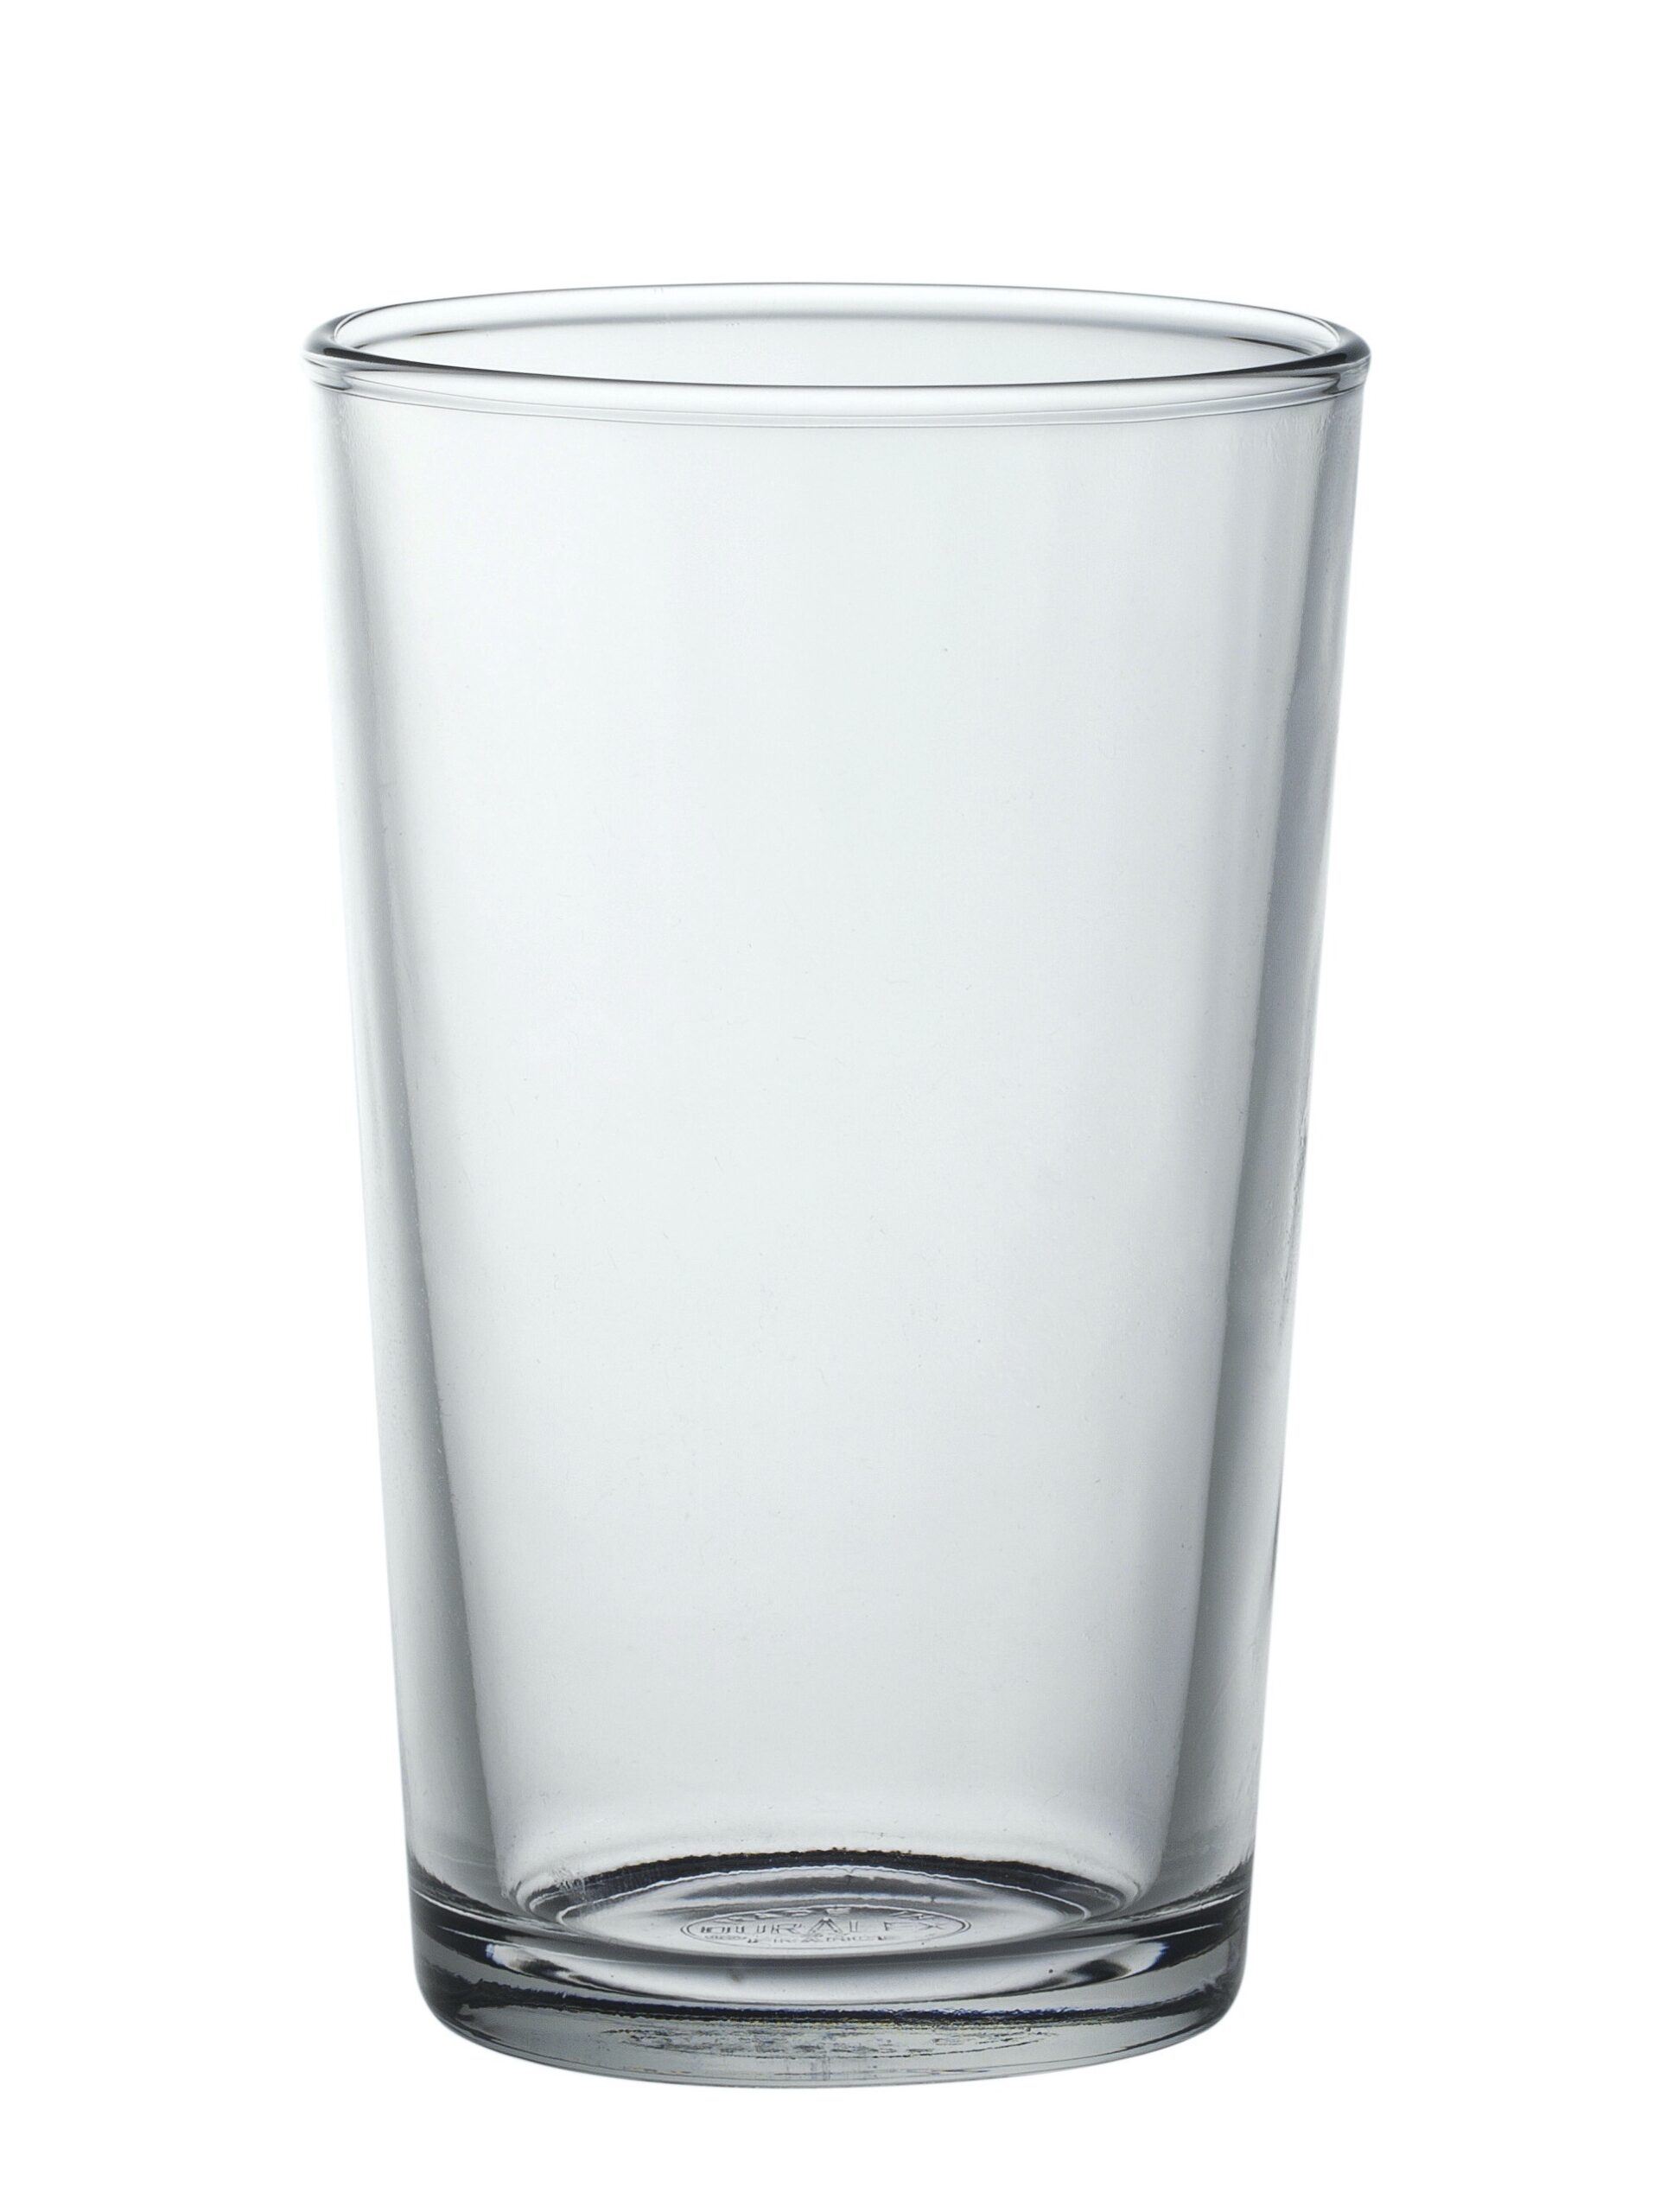 Duralex Chope Unie Tumbler, Trinkglas, 280ml, mit Füllstrich bei 0.2l, Glas gehärtet, transparent, 6 Stück